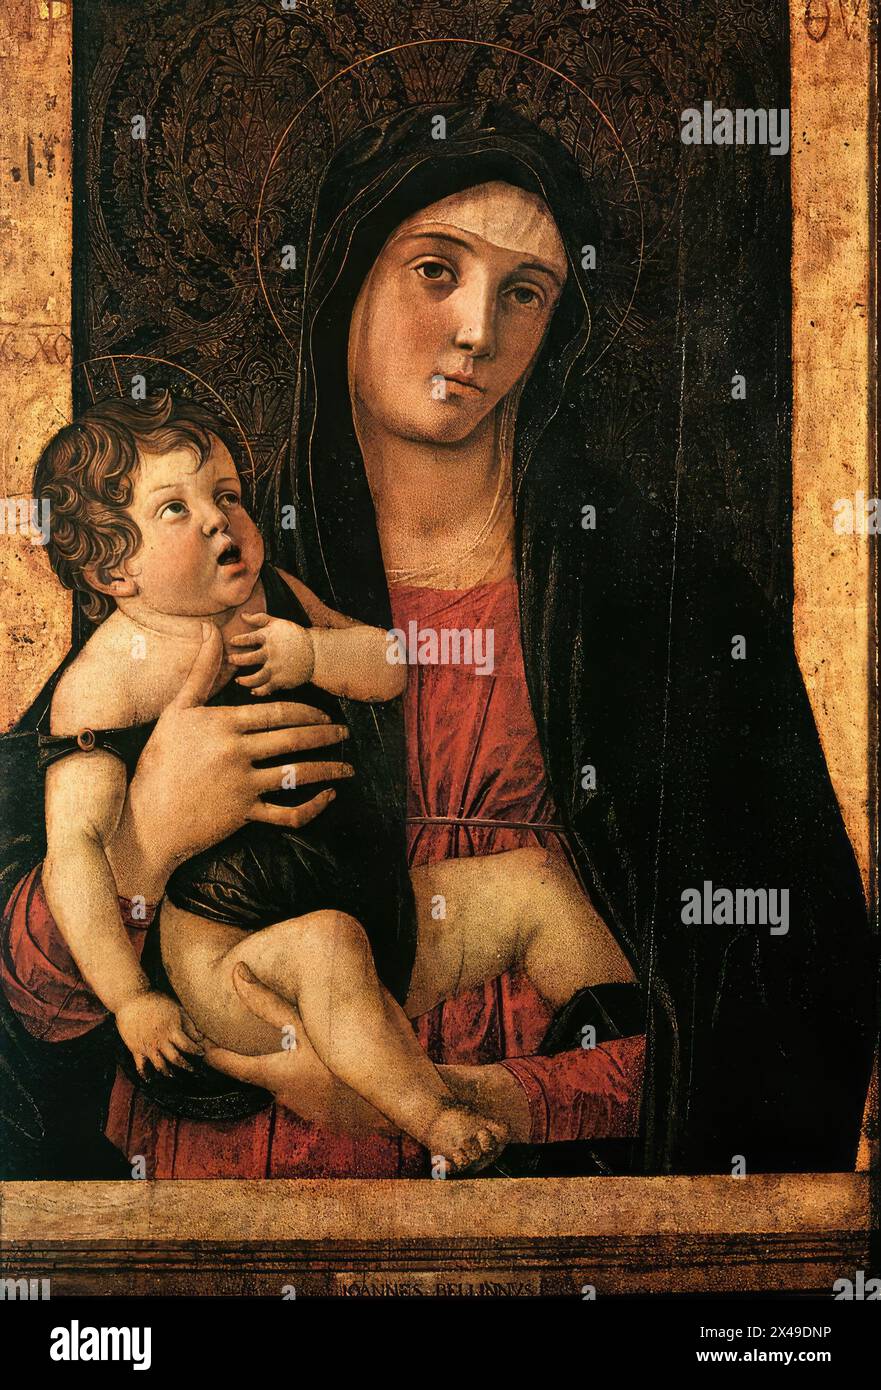 BELLINI, Giovanni (b. CA. 1426, Venezia, d. 1516, Venezia) Madone avec enfant c. 1475 Tempera sur panneau, 75 x 50 cm Santa Maria dell'Orto, Venise la peinture est signée comme 'IOANNES Bellns' au milieu du fond. Il a été volé à l'église dans les années 1980, on ignore où il se trouve actuellement. --- mots-clés : ------------- Auteur : BELLINI, Giovanni titre : Madonna with Child chronologie : 1451-1500 École : italienne forme : peinture type : religieux Banque D'Images